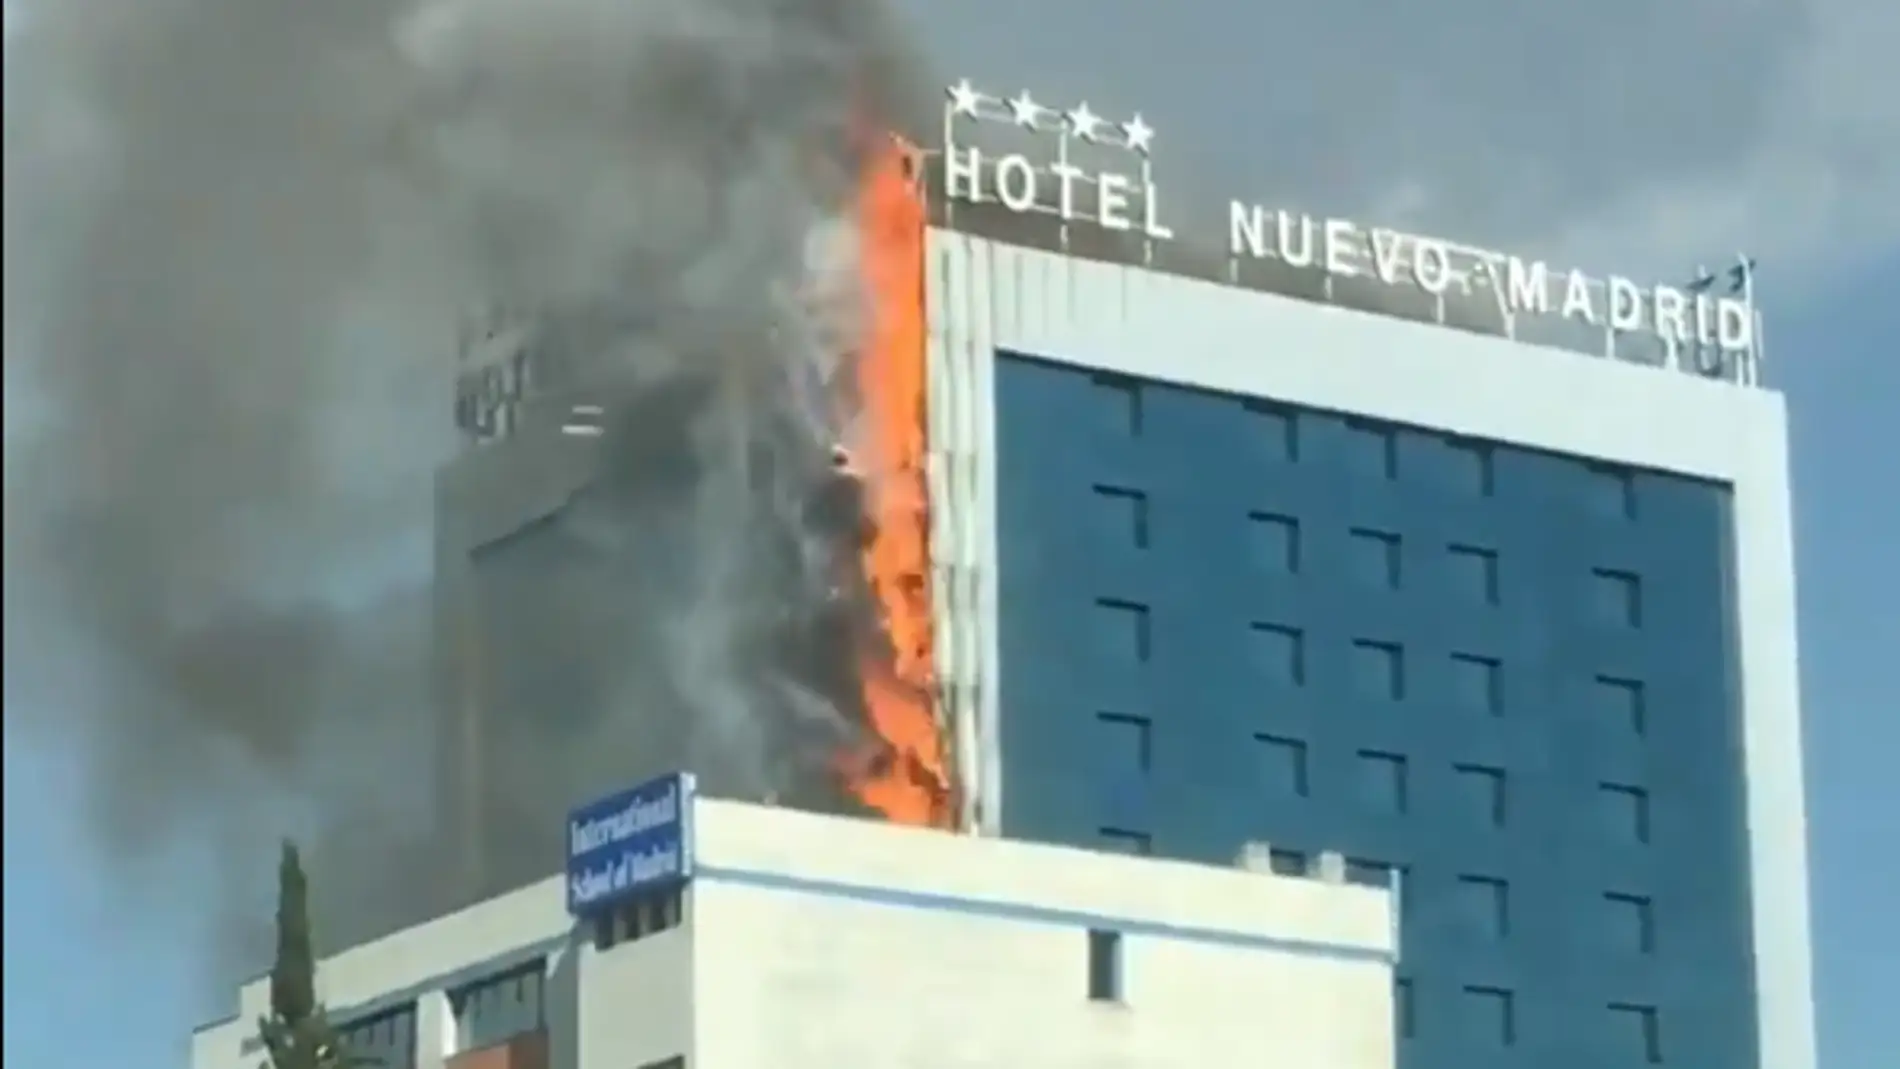 Aparatoso incendio en el Hotel Nuevo Madrid situado junto a la M-30